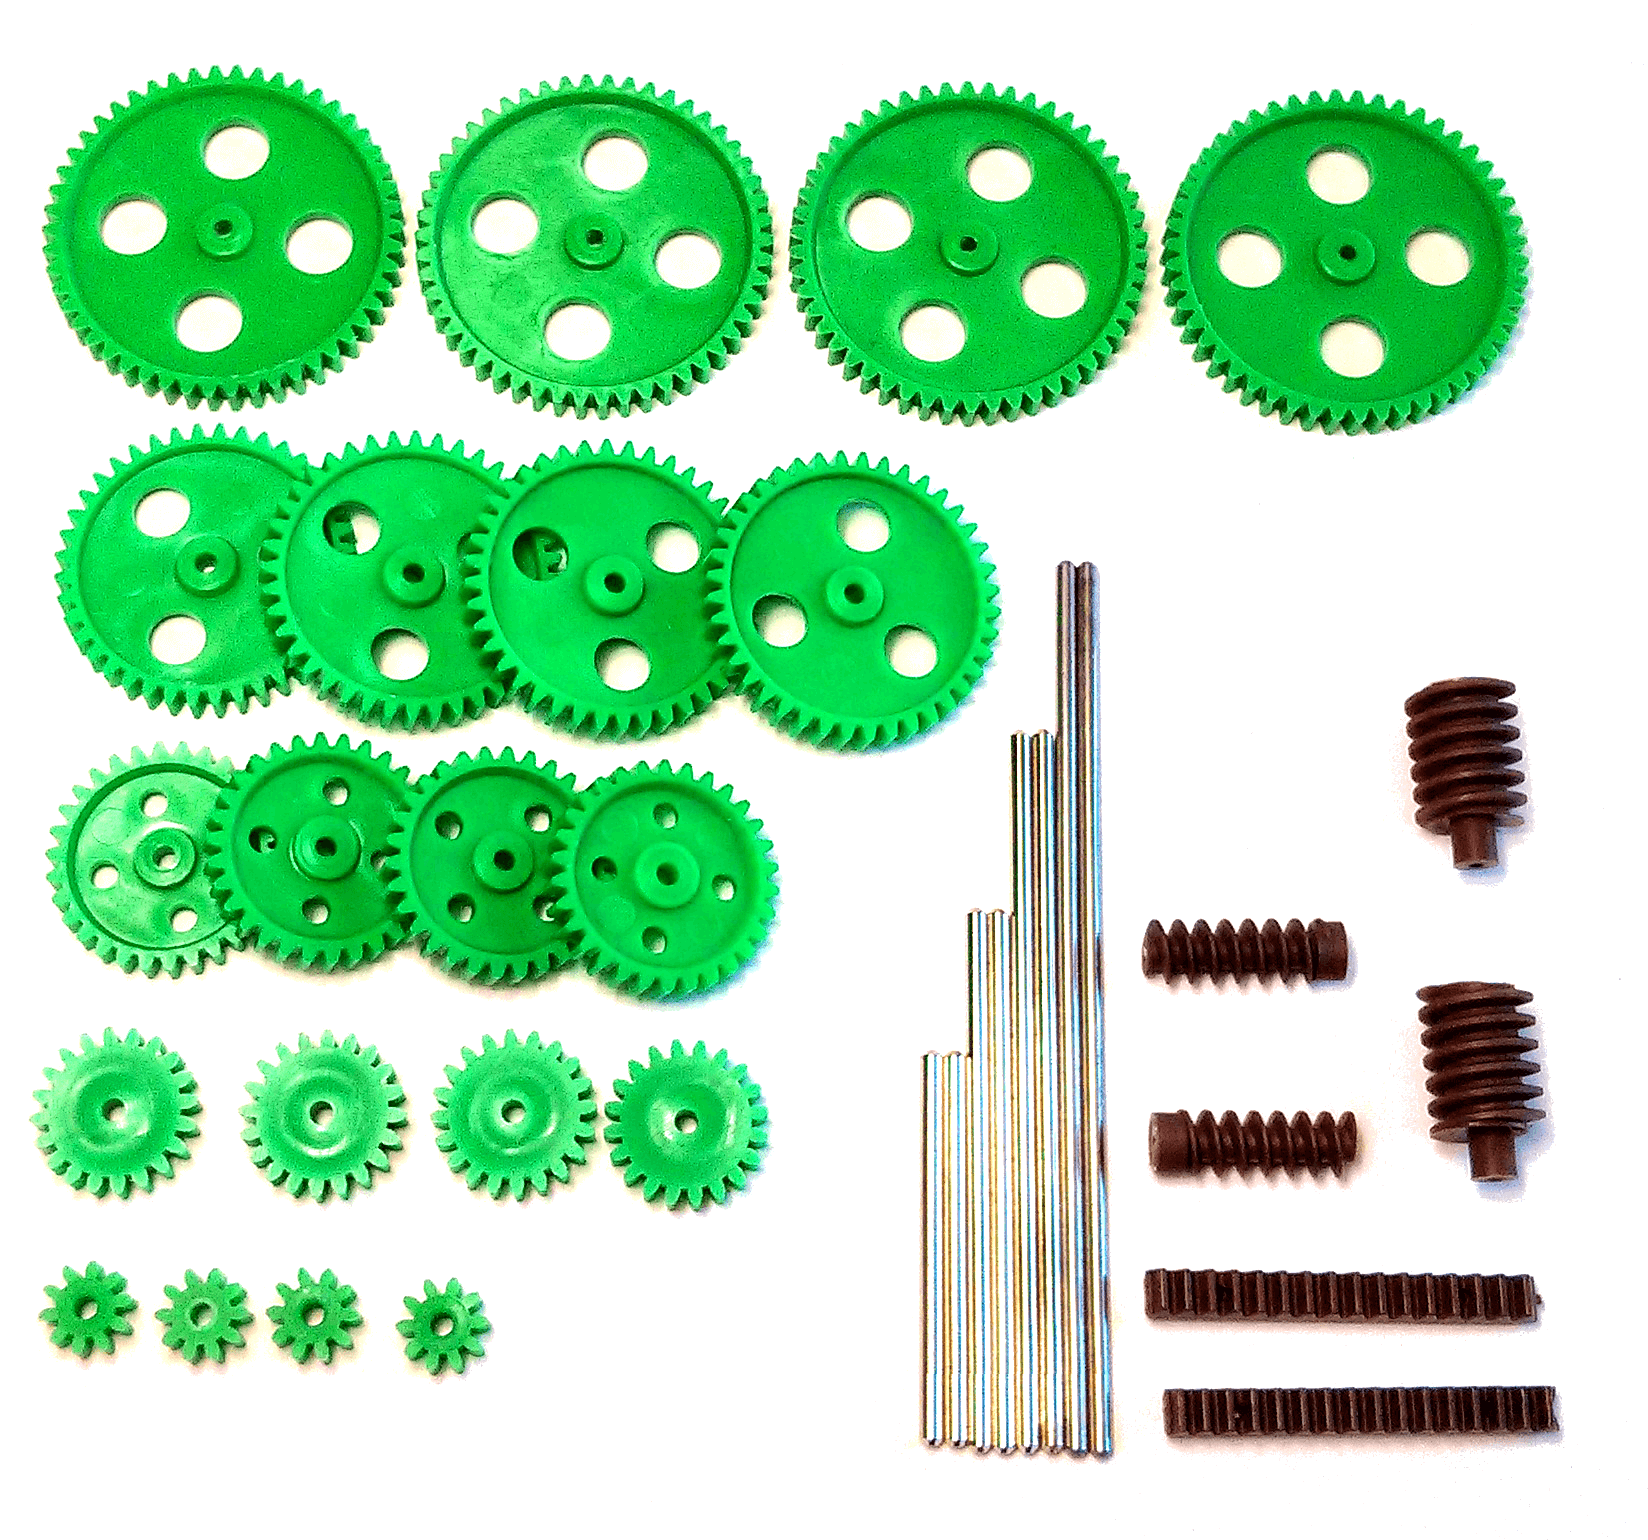 Gearwheel Set - Moulded Plastic